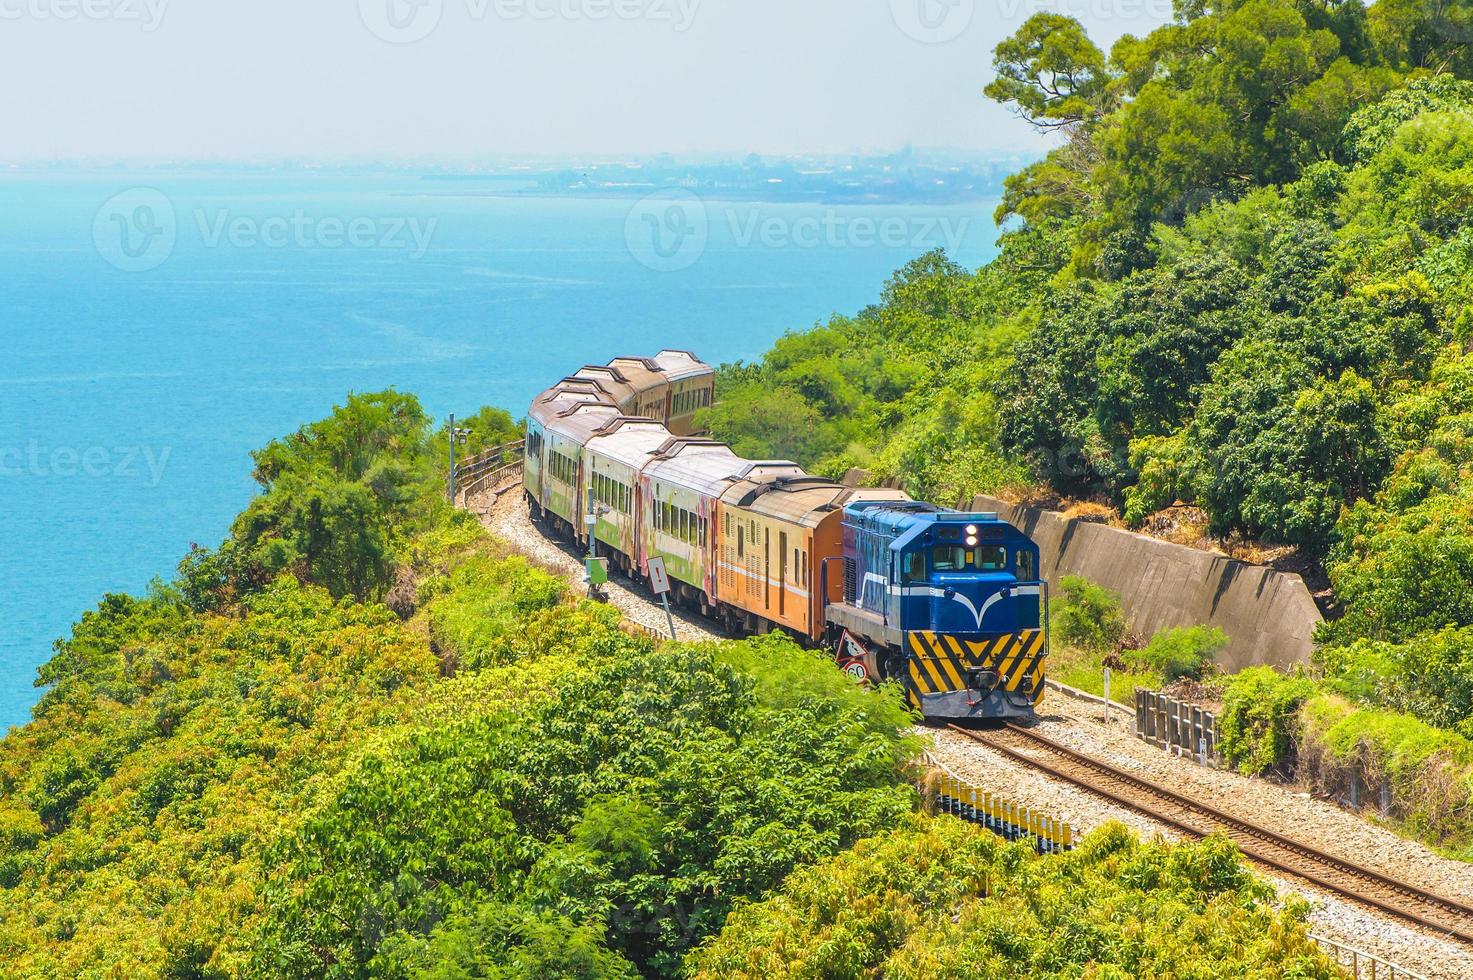 landskap av södra Taiwan med järnväg och tåg foto